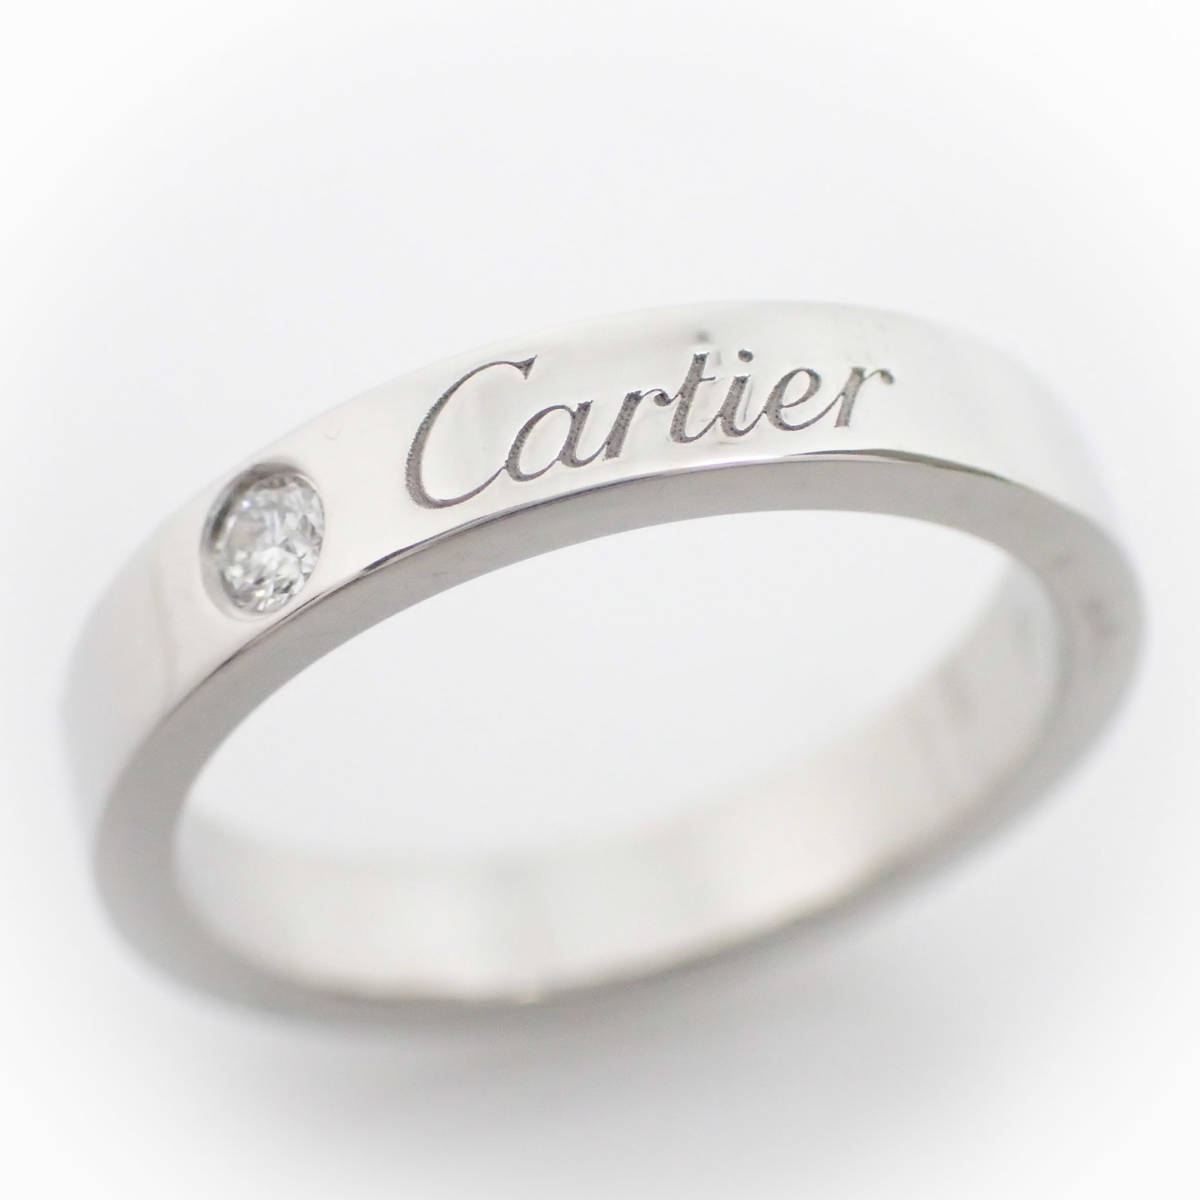  Cartier Cartier Pt950 бриллиант en серый bdo кольцо 46 номер #46 письменная гарантия гарантийная карточка платина 